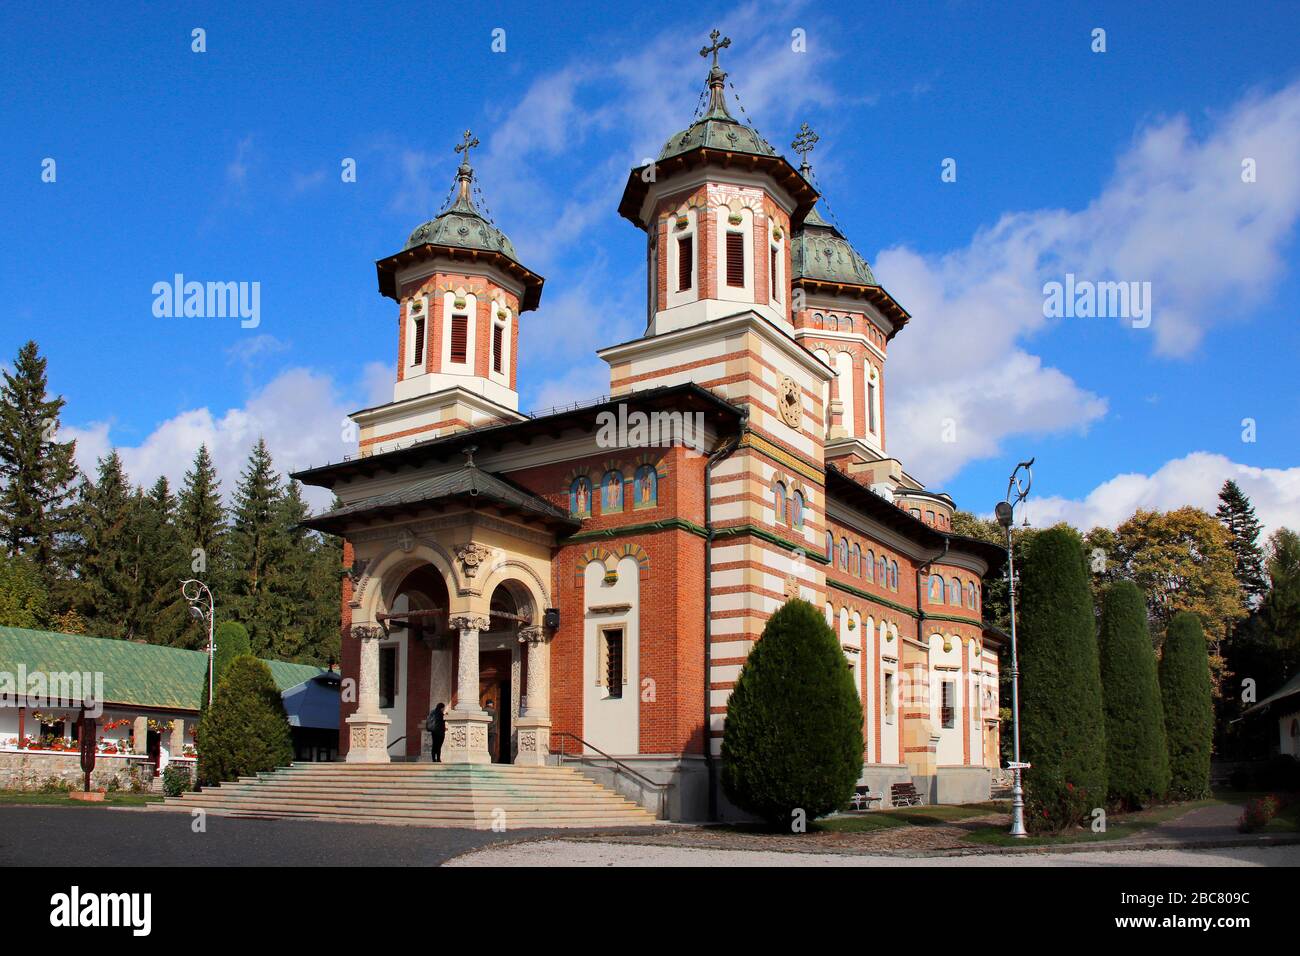 Monastère de Sinaia, construit en 1695, vallée de Prahova, monument religieux pittoresque de Roumanie Banque D'Images